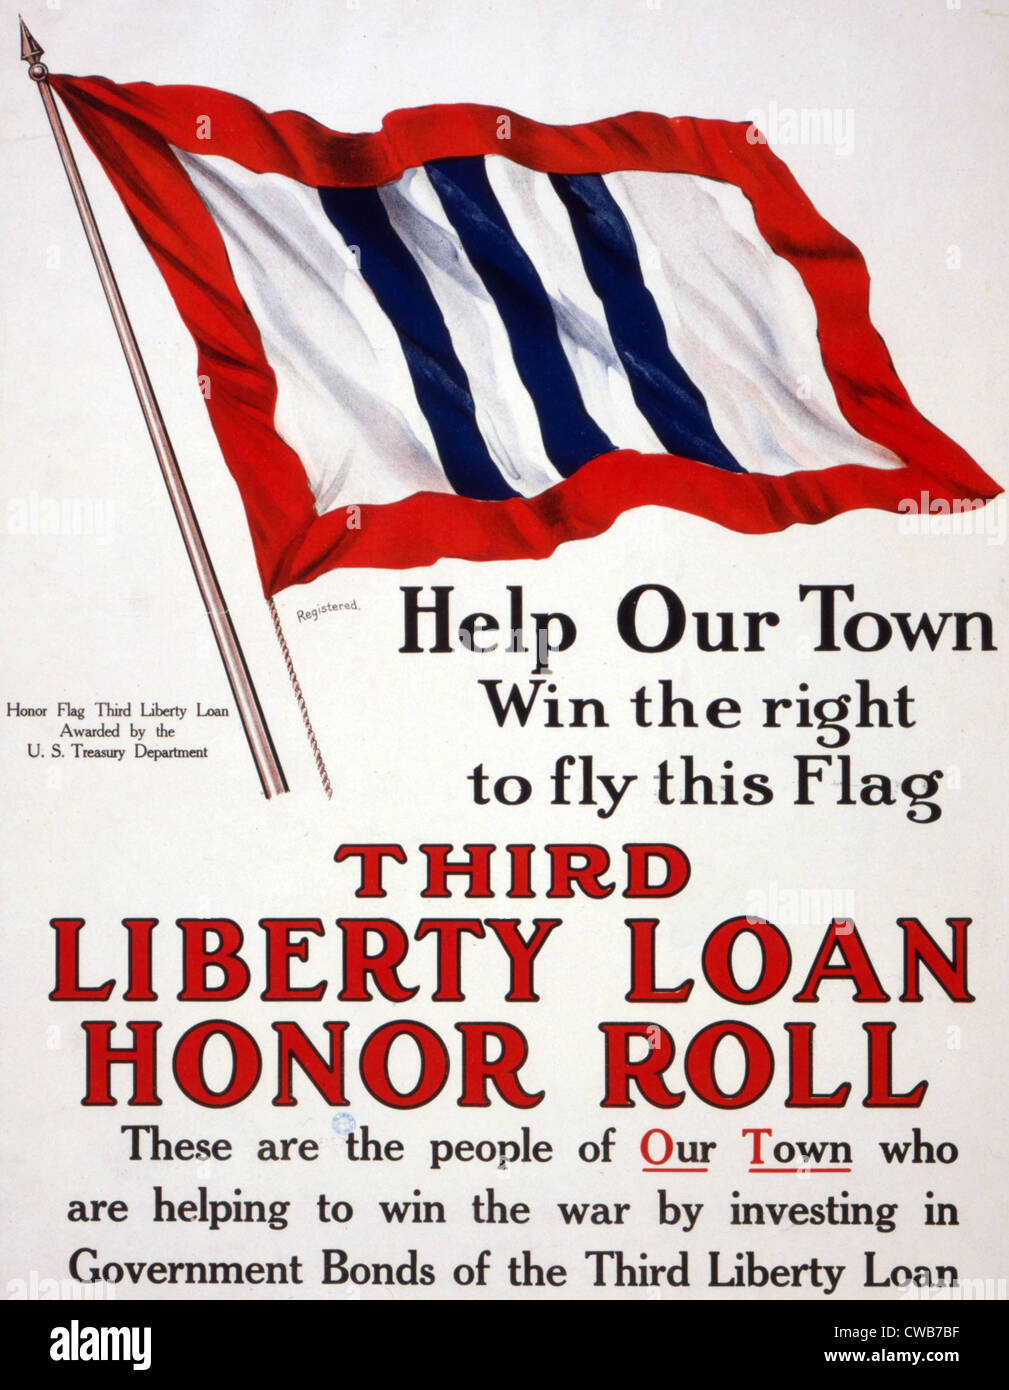 La Première Guerre mondiale, Affiche - aider notre ville gagne le droit de brandir ce drapeau - Troisième liberté d'honneur prêt - décernée par le U.S. Banque D'Images